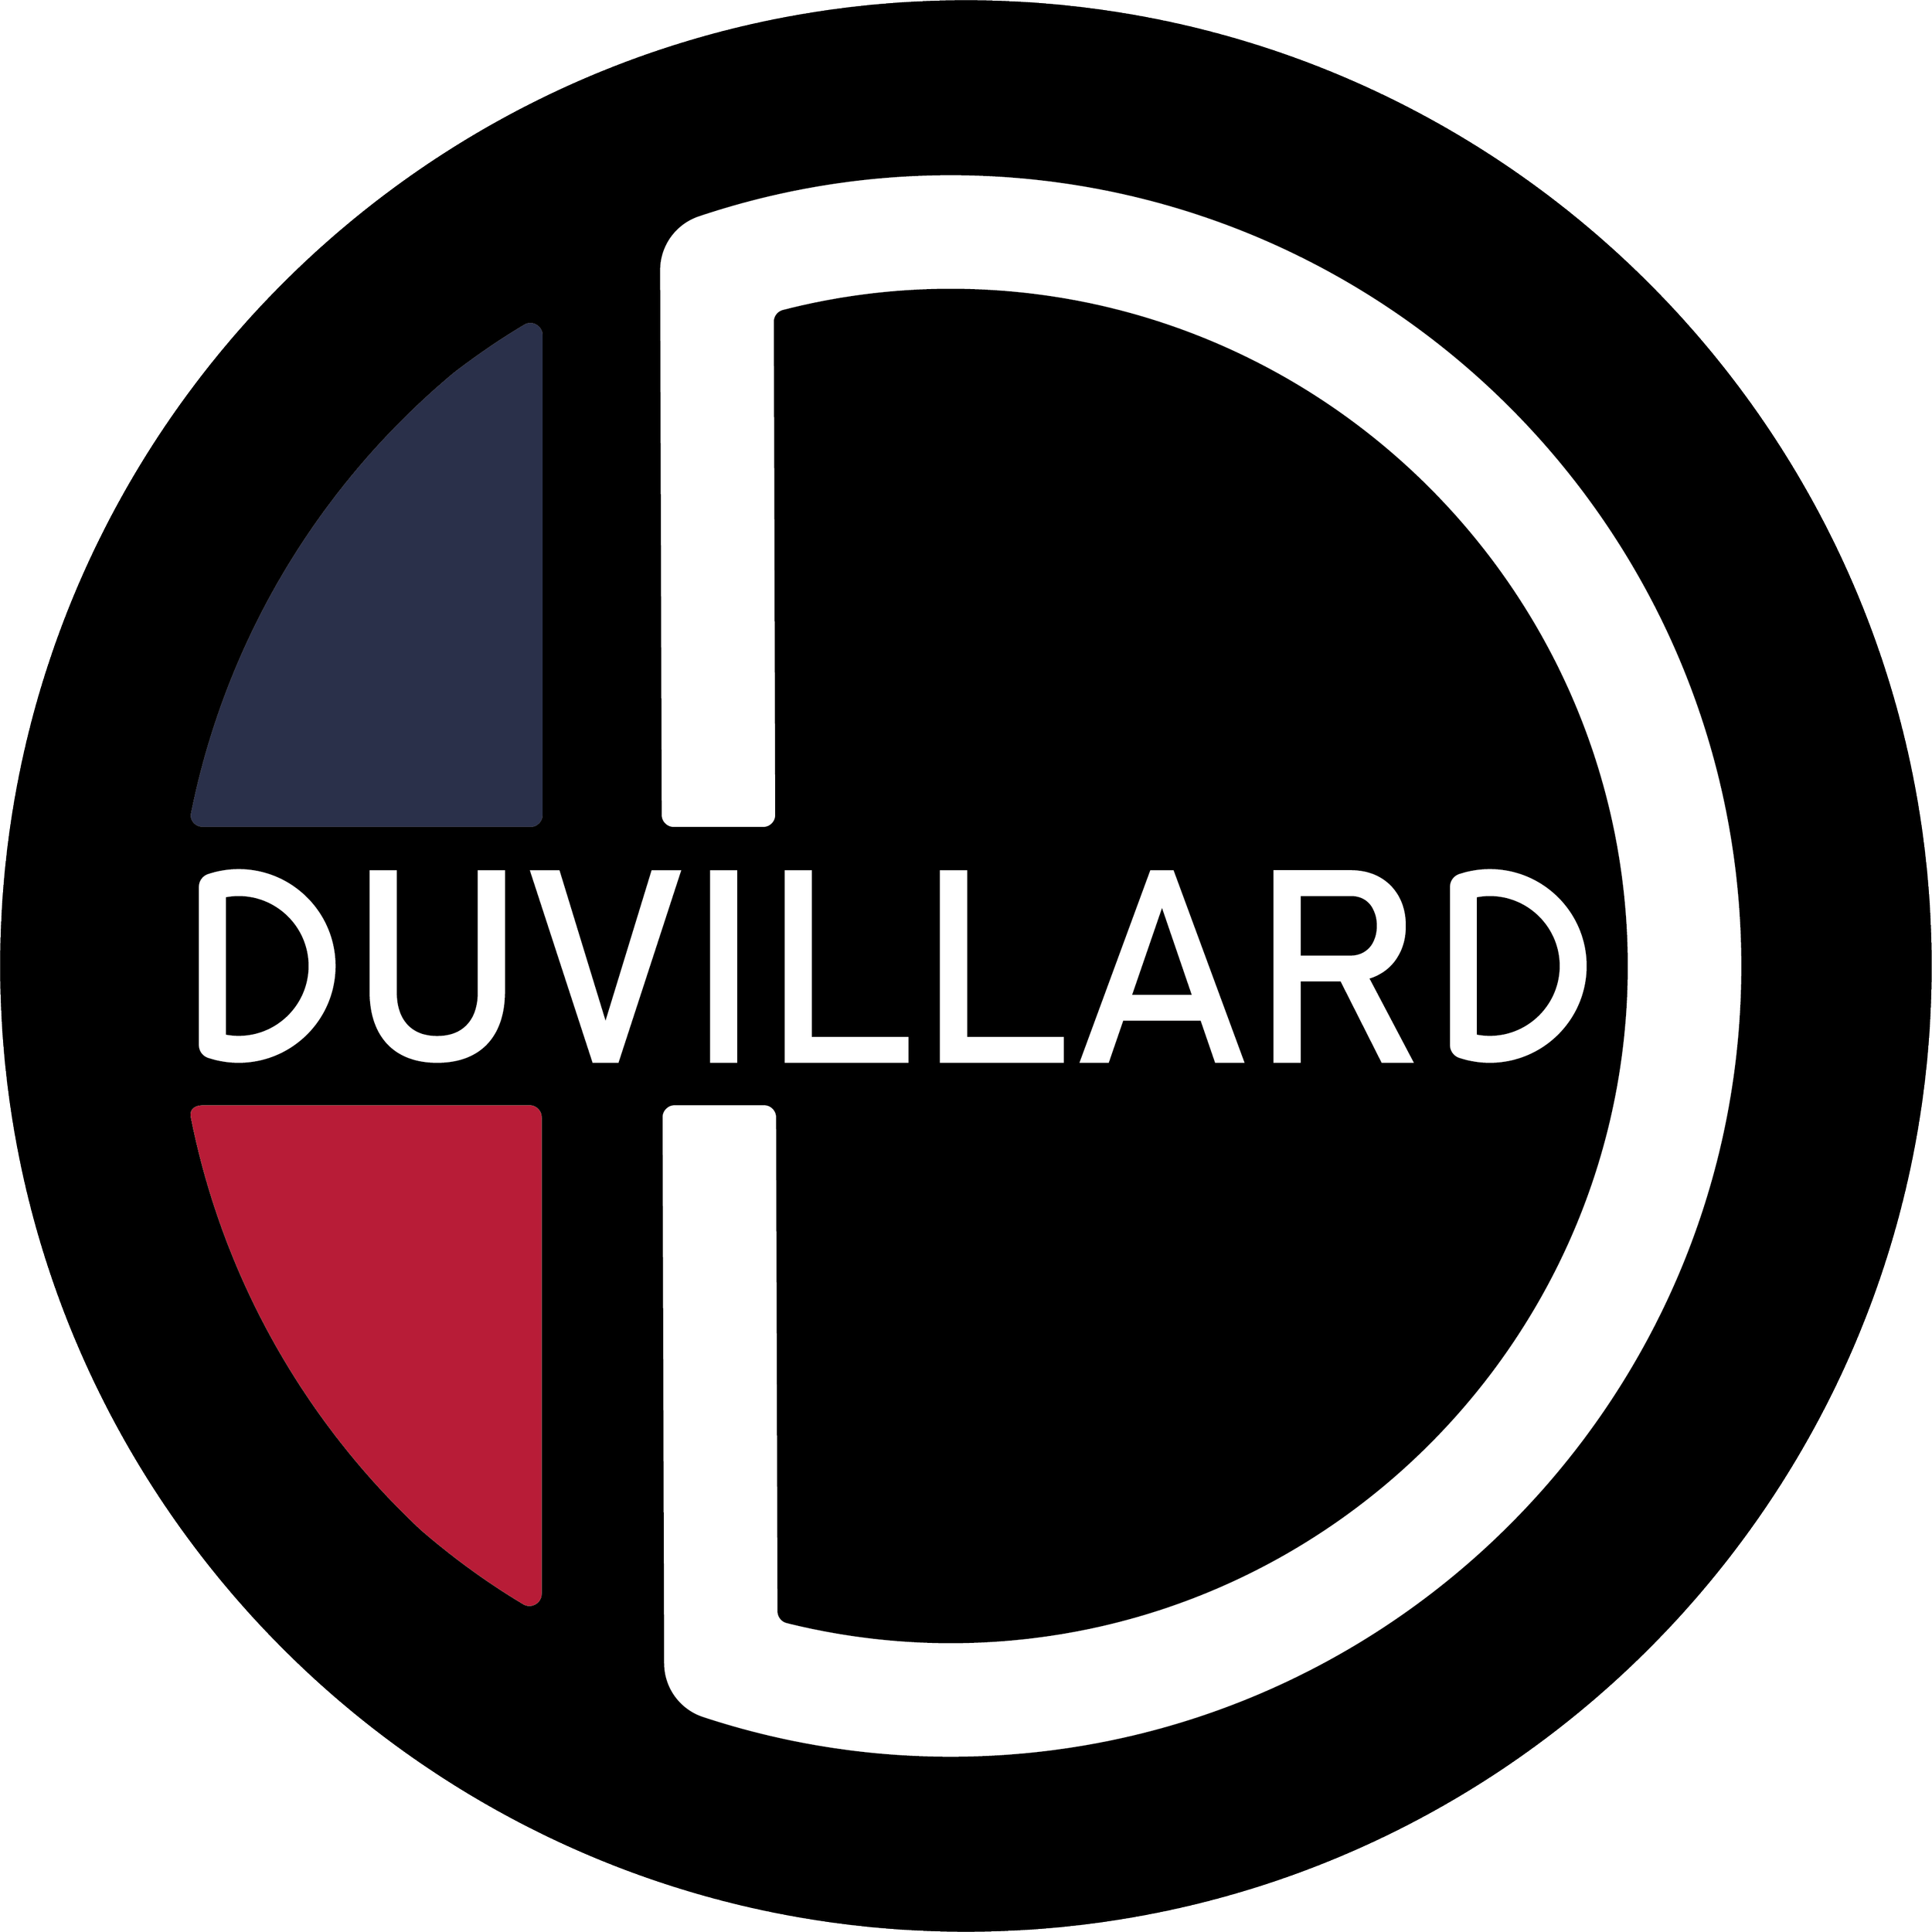 DUVILLARD-NEW HD.png